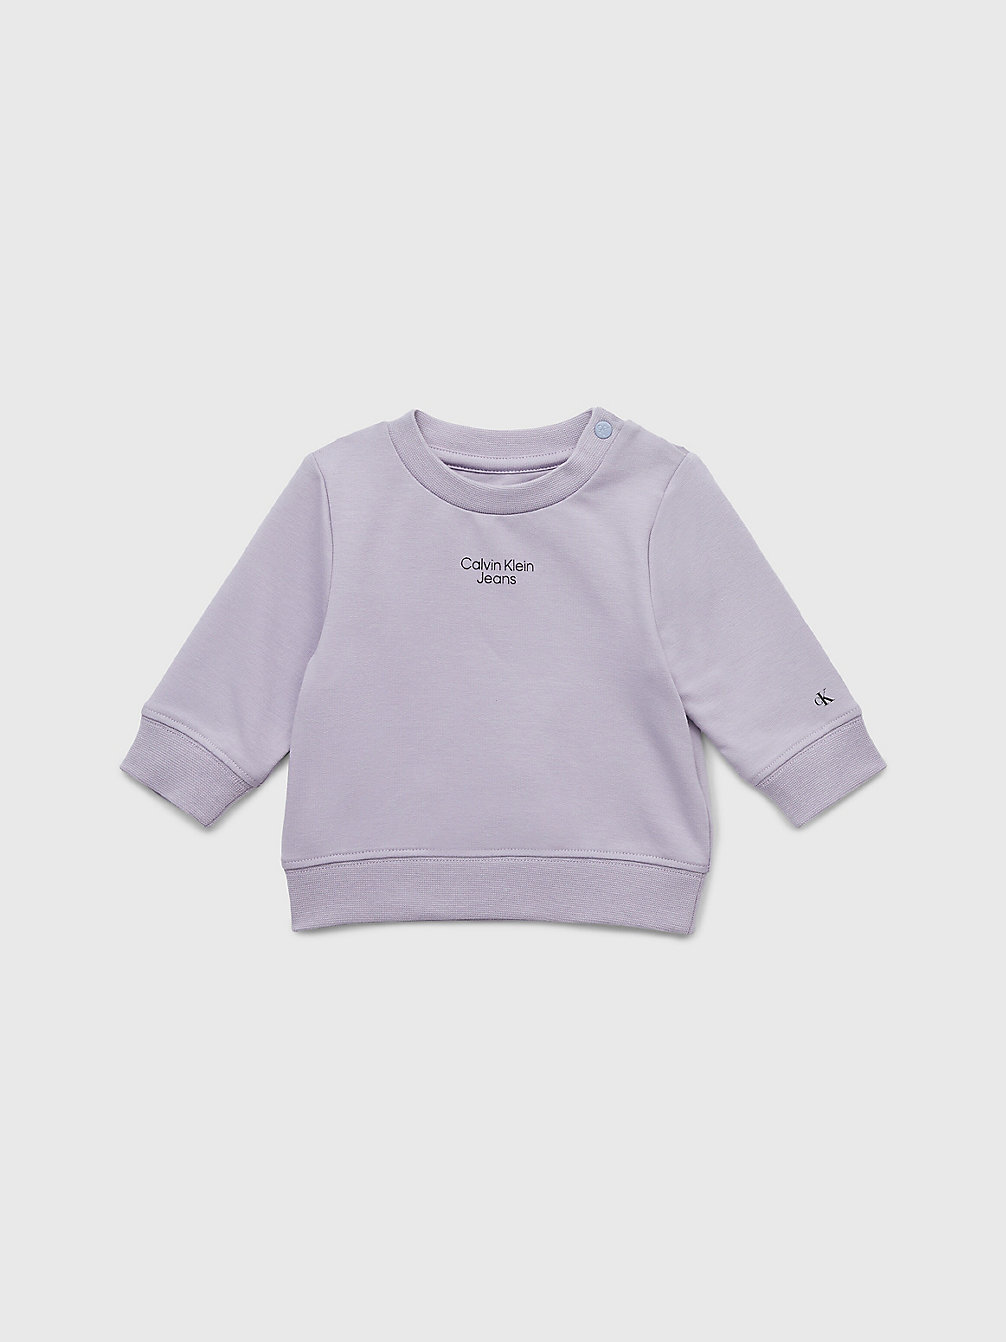 SMOKY LILAC Baby-Sweatshirt Aus Bio-Baumwolle undefined newborn Calvin Klein